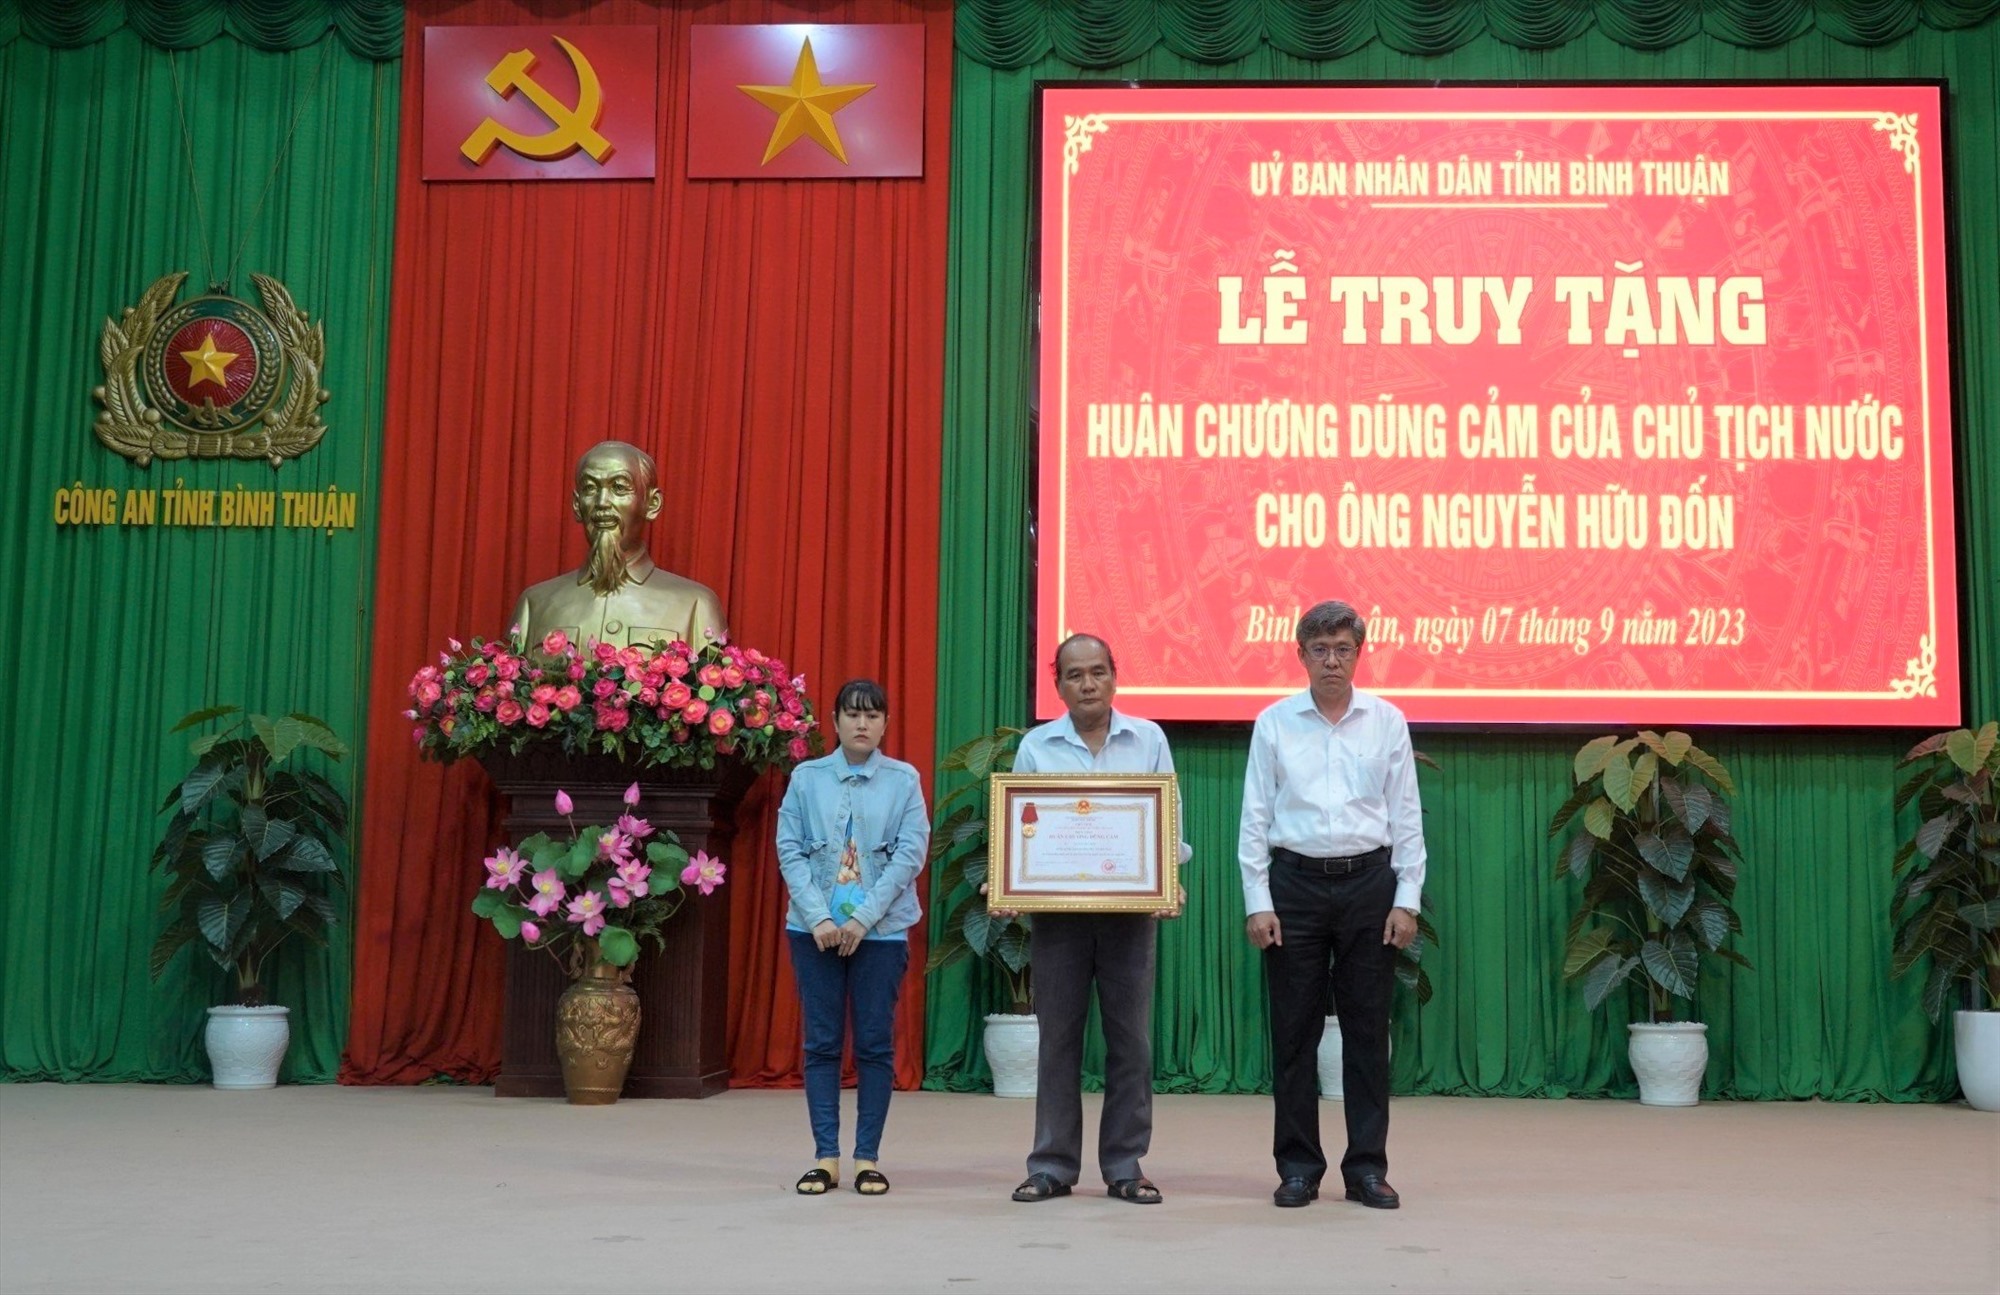 Đại diện gia đình anh Nguyễn Hữu Đốn đón nhận Huân chương dũng cảm của Chủ tịch nước truy tặng anh Nguyễn Hữu Đốn. Ảnh: Duy Tuấn